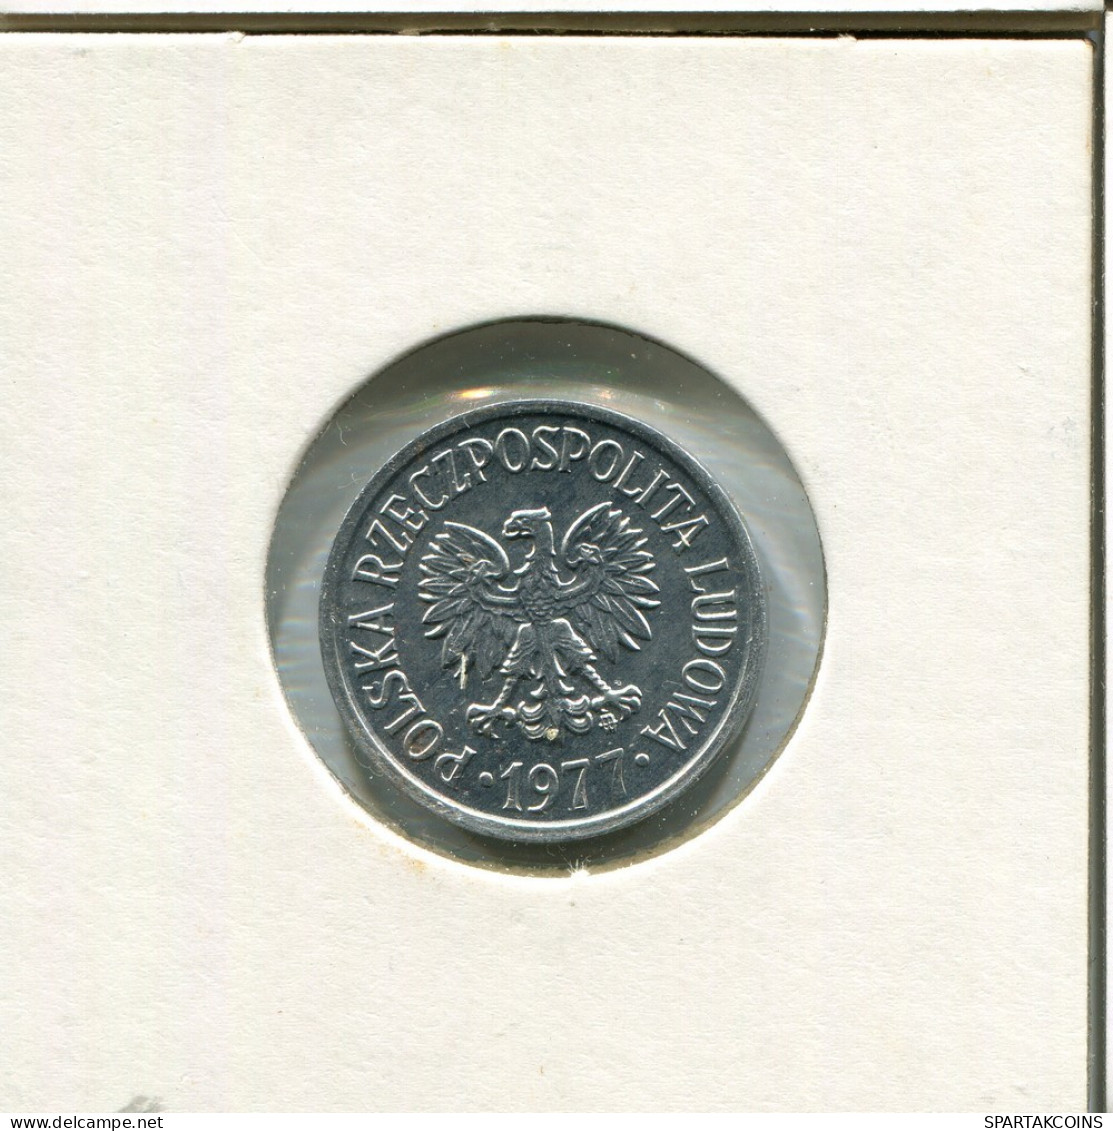 20 GROSZY 1977 POLAND Coin #AR776.U.A - Polonia